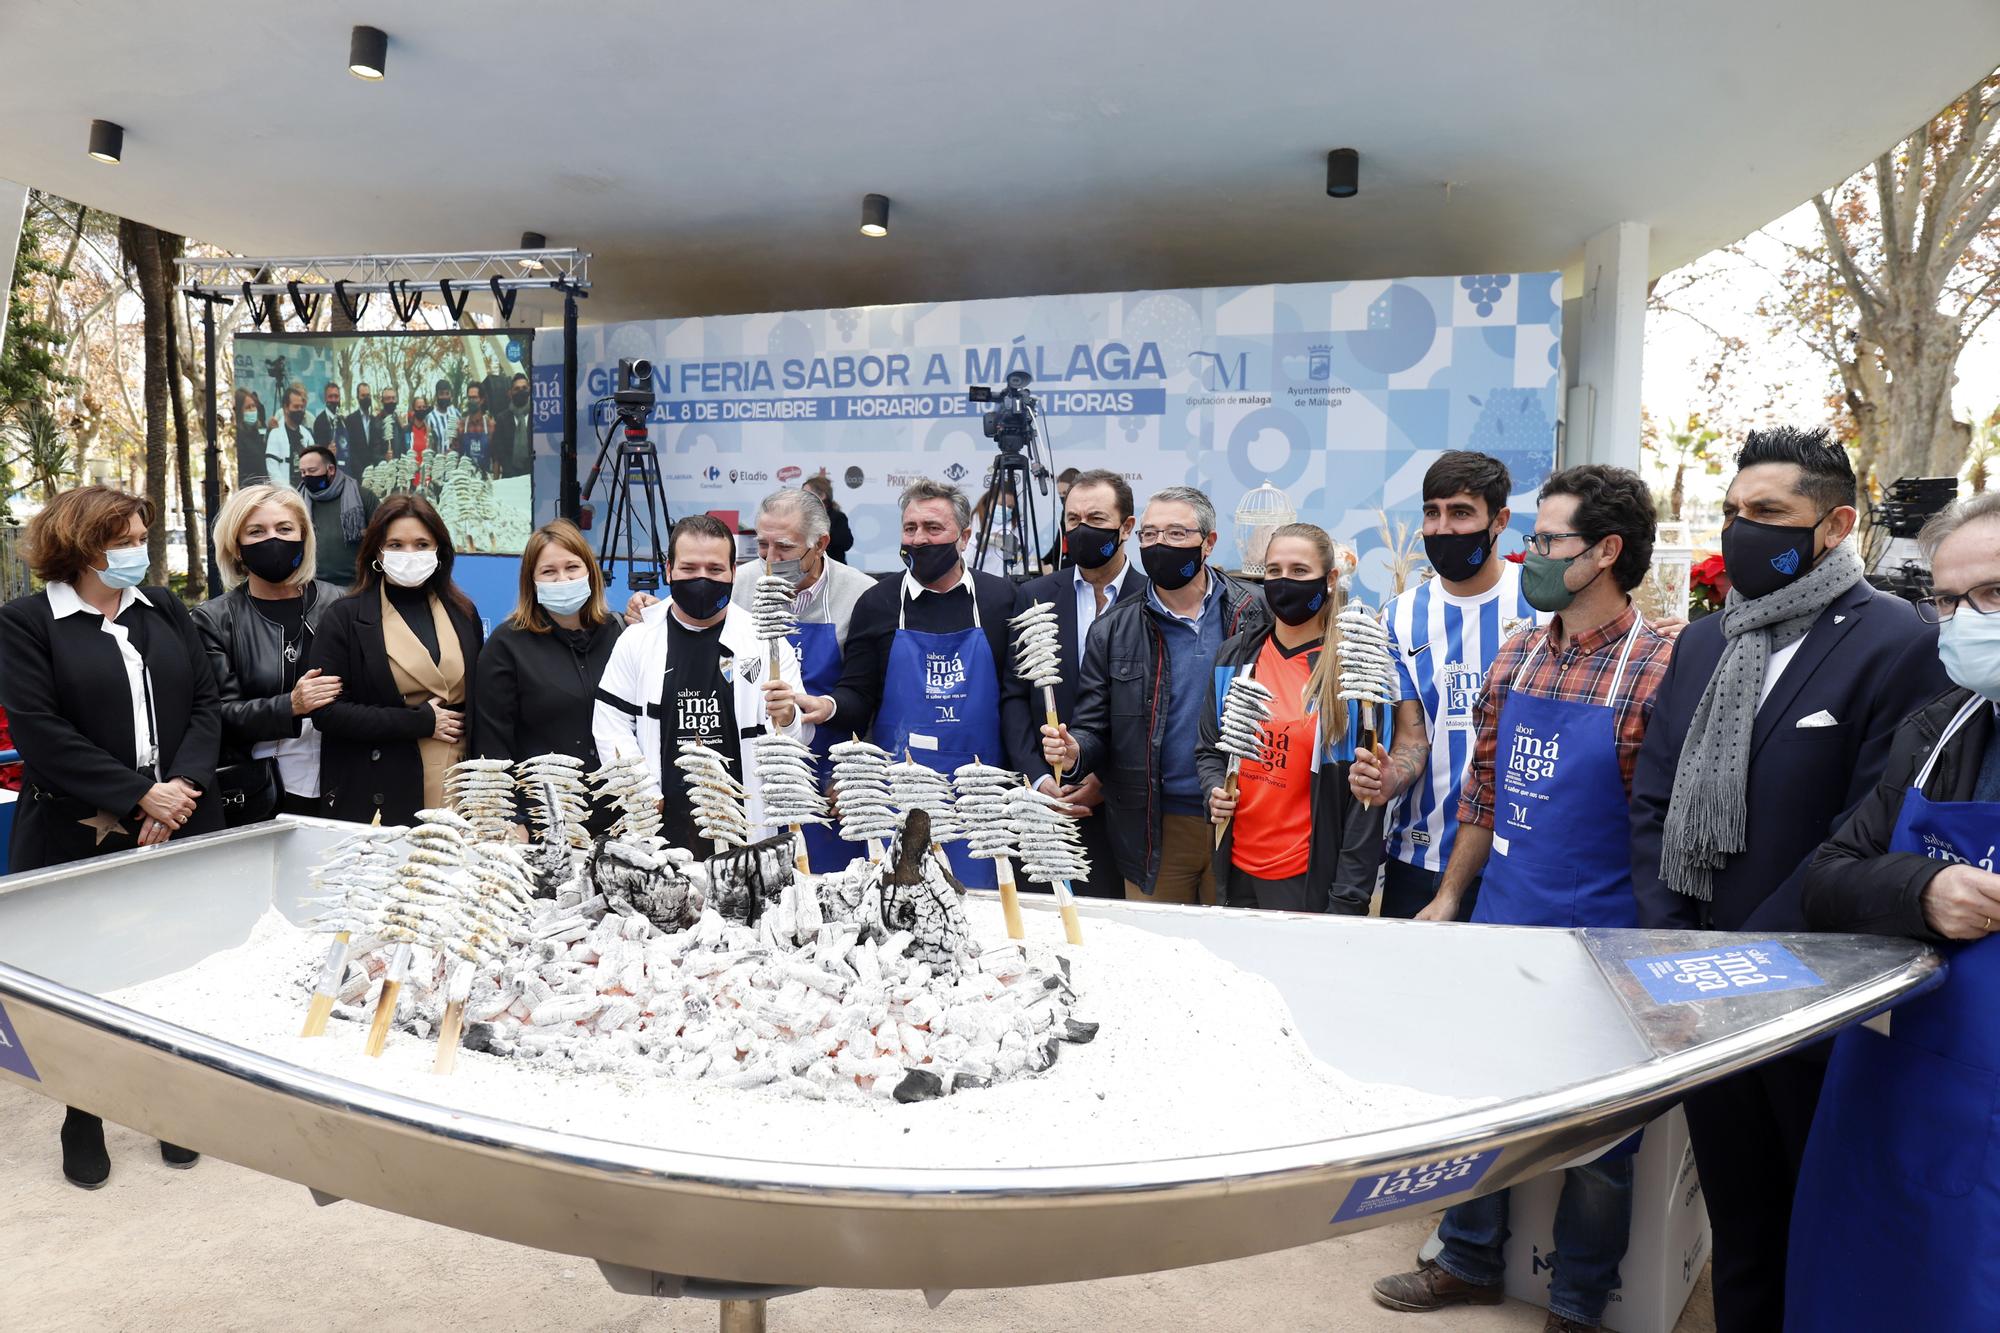 Visita del Málaga CF a la Feria Sabor a Málaga